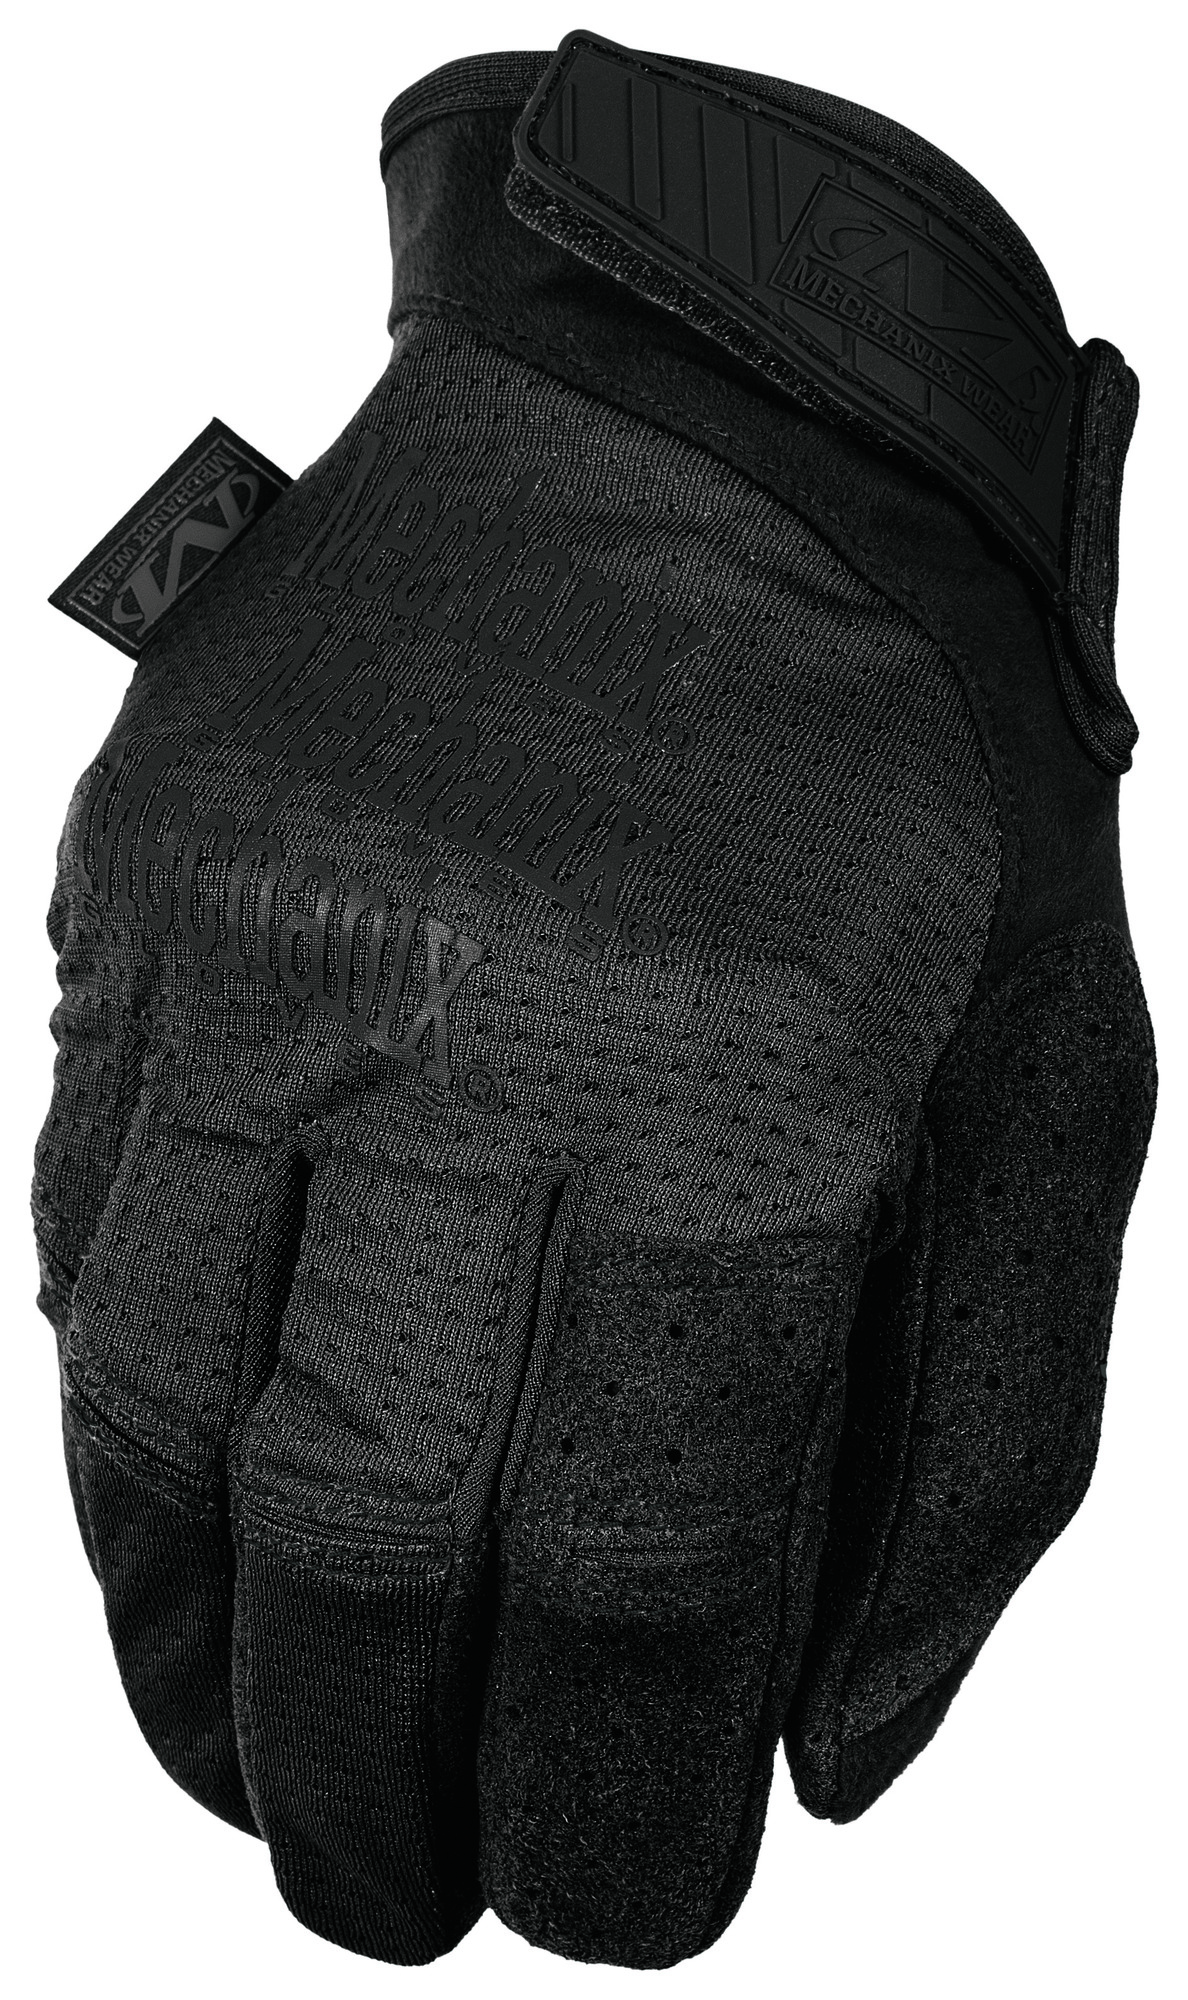 MECHANIX priedušné pracovné rukavice Specialty Vent - Covert - čierne S/8